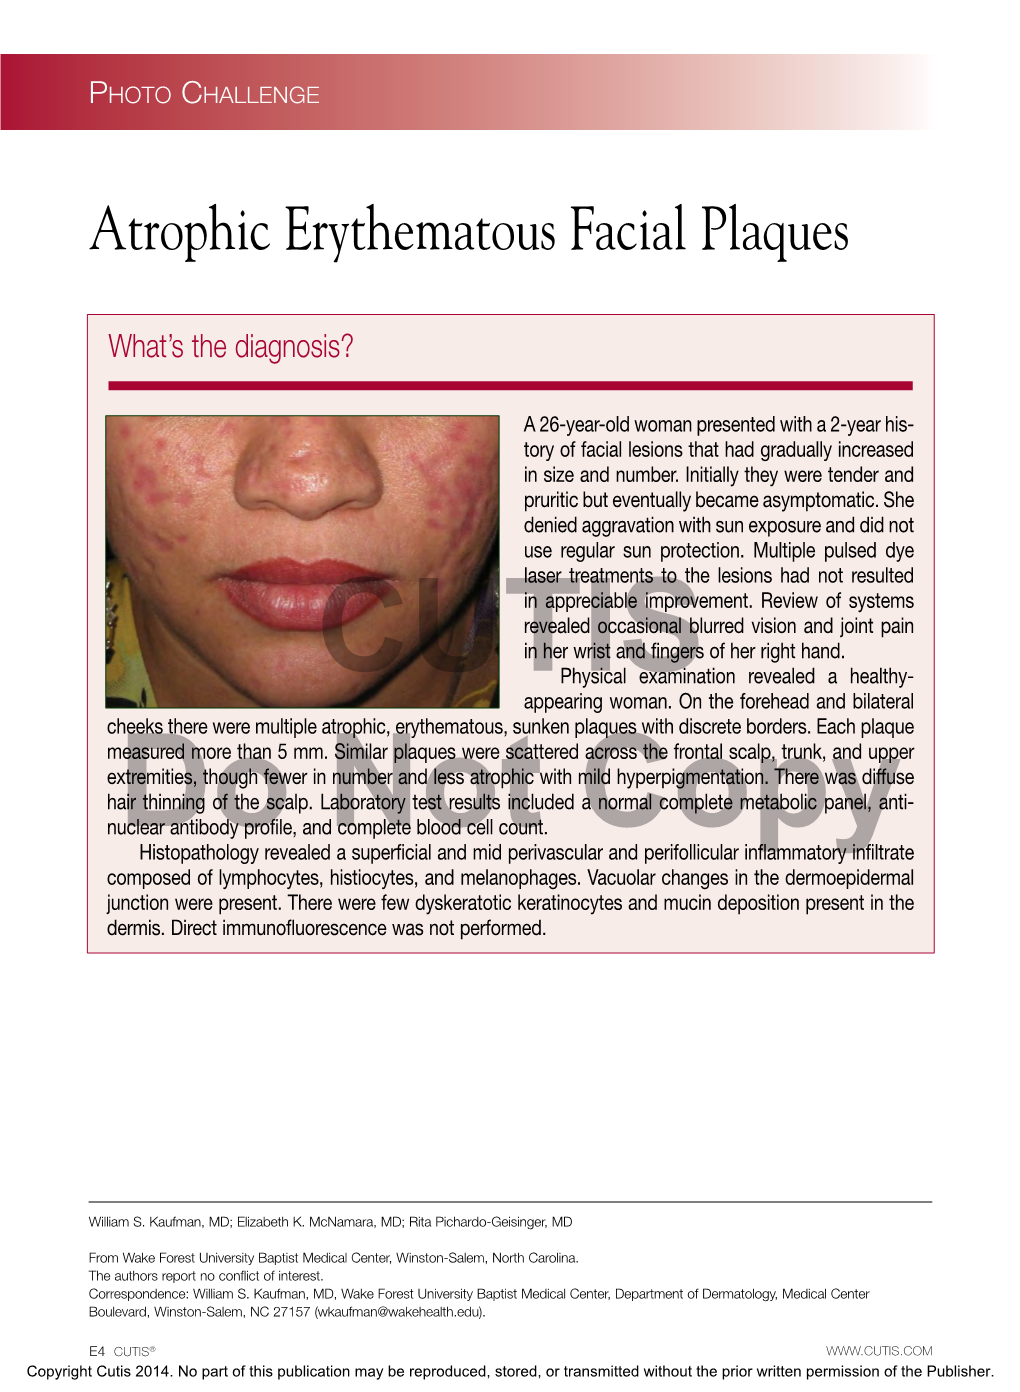 Atrophic Erythematous Facial Plaques